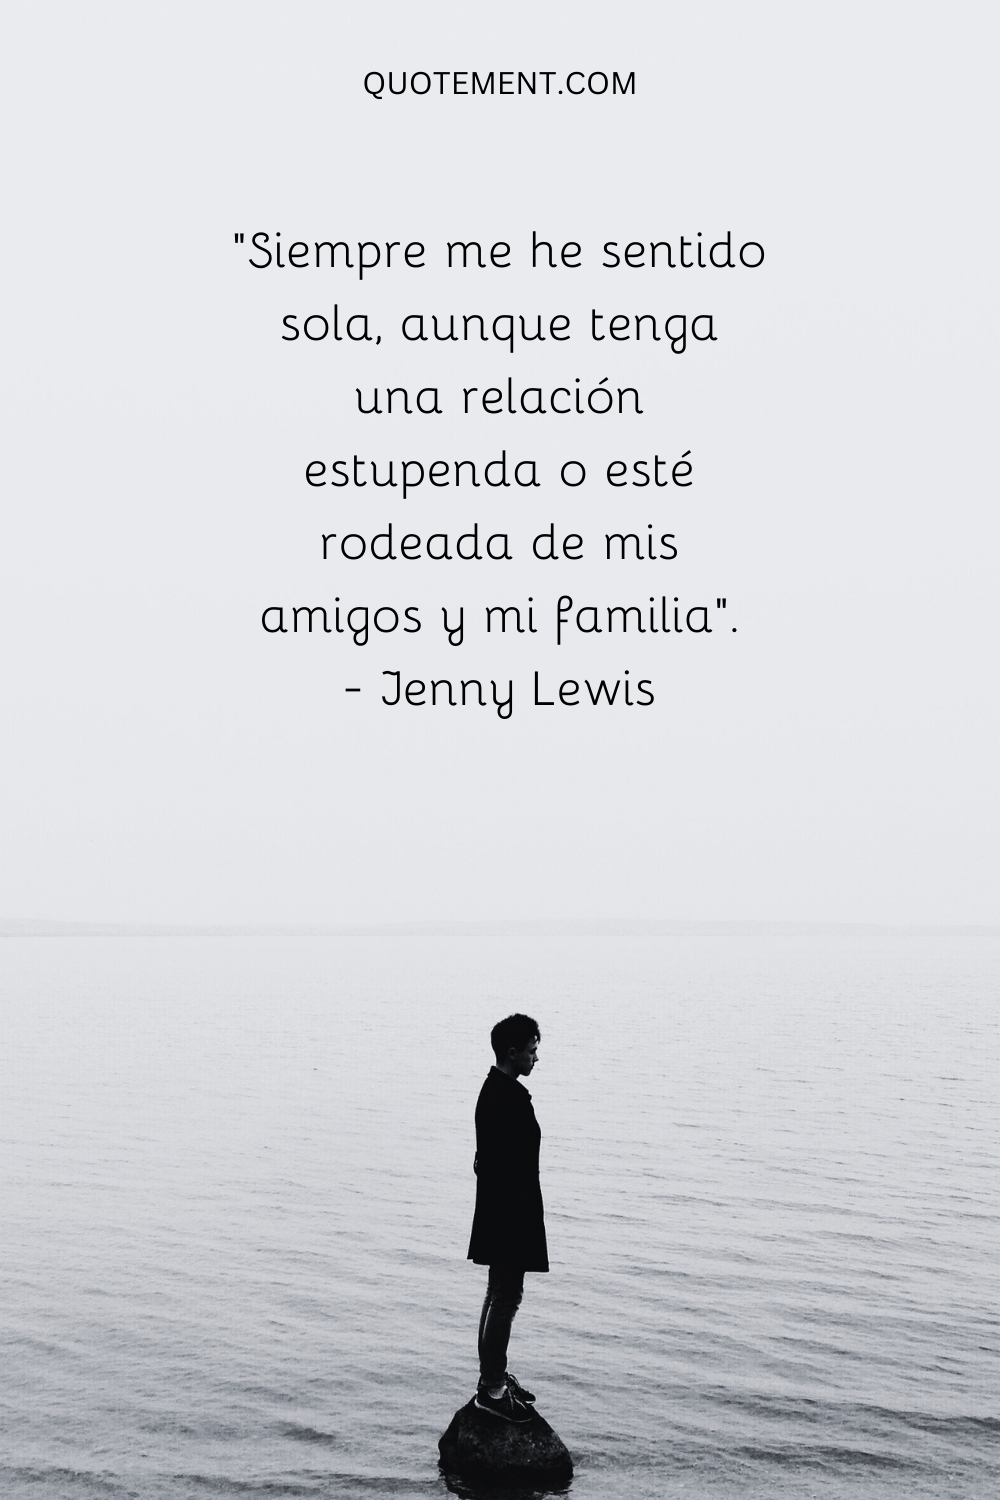 "Siempre me he sentido sola, aunque tenga una relación estupenda o esté rodeada de mis amigos y mi familia". - Jenny Lewis